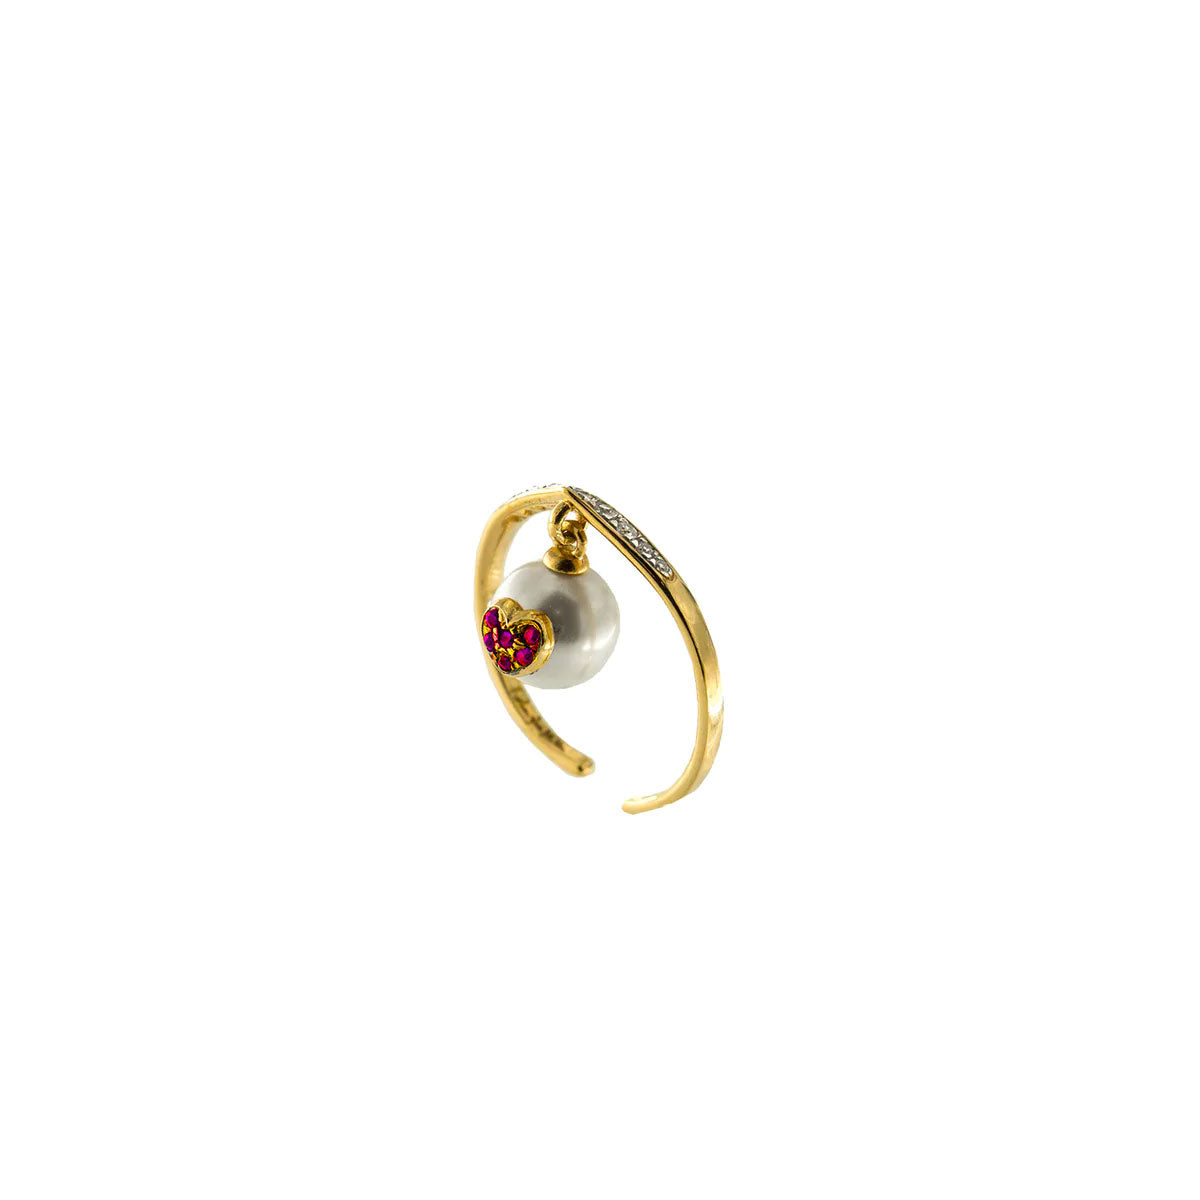 Anello rigido dorato e zirconi bianchi sulla parte alta del gambo. Al centro è saldata una perla bianca pendente con un cuore di zirconi rossi.